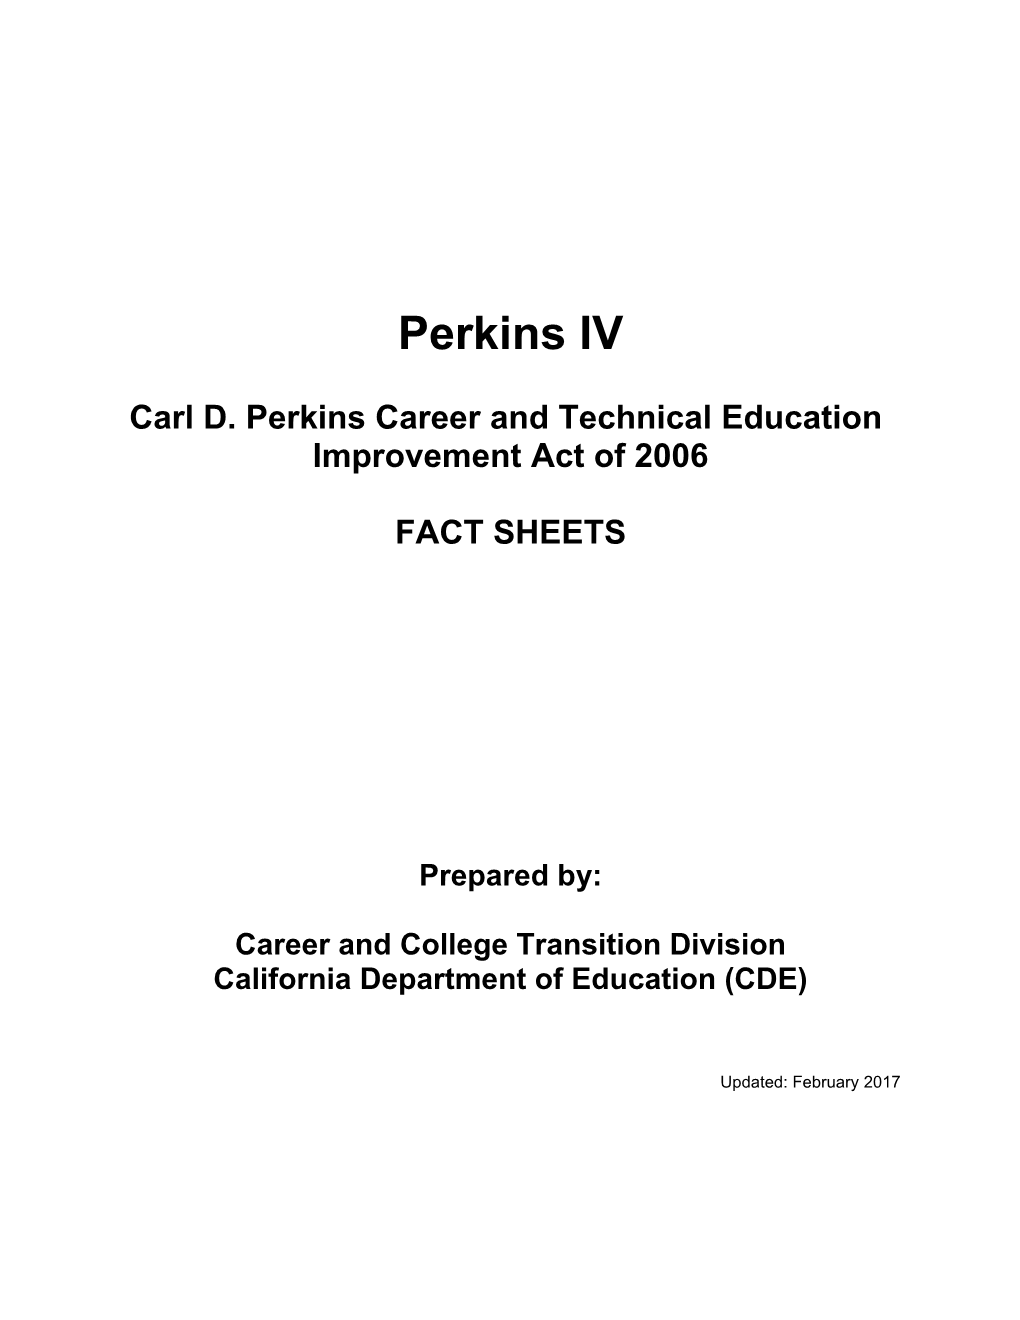 Perkins Fact Sheets - Perkins (CA Dept of Education)